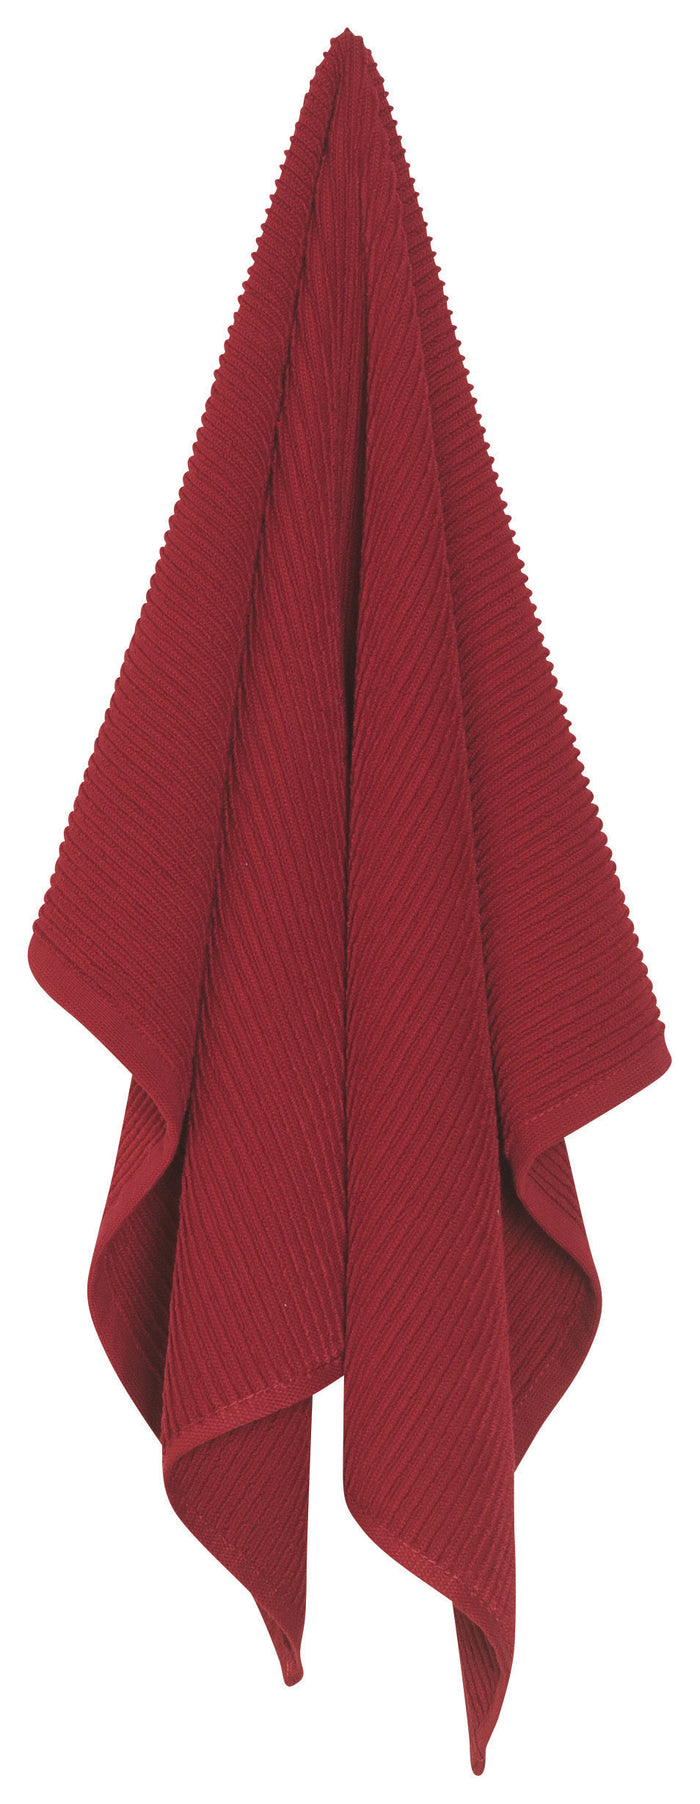 Danica Now Designs Ripple Tea Towel, Carmine Red